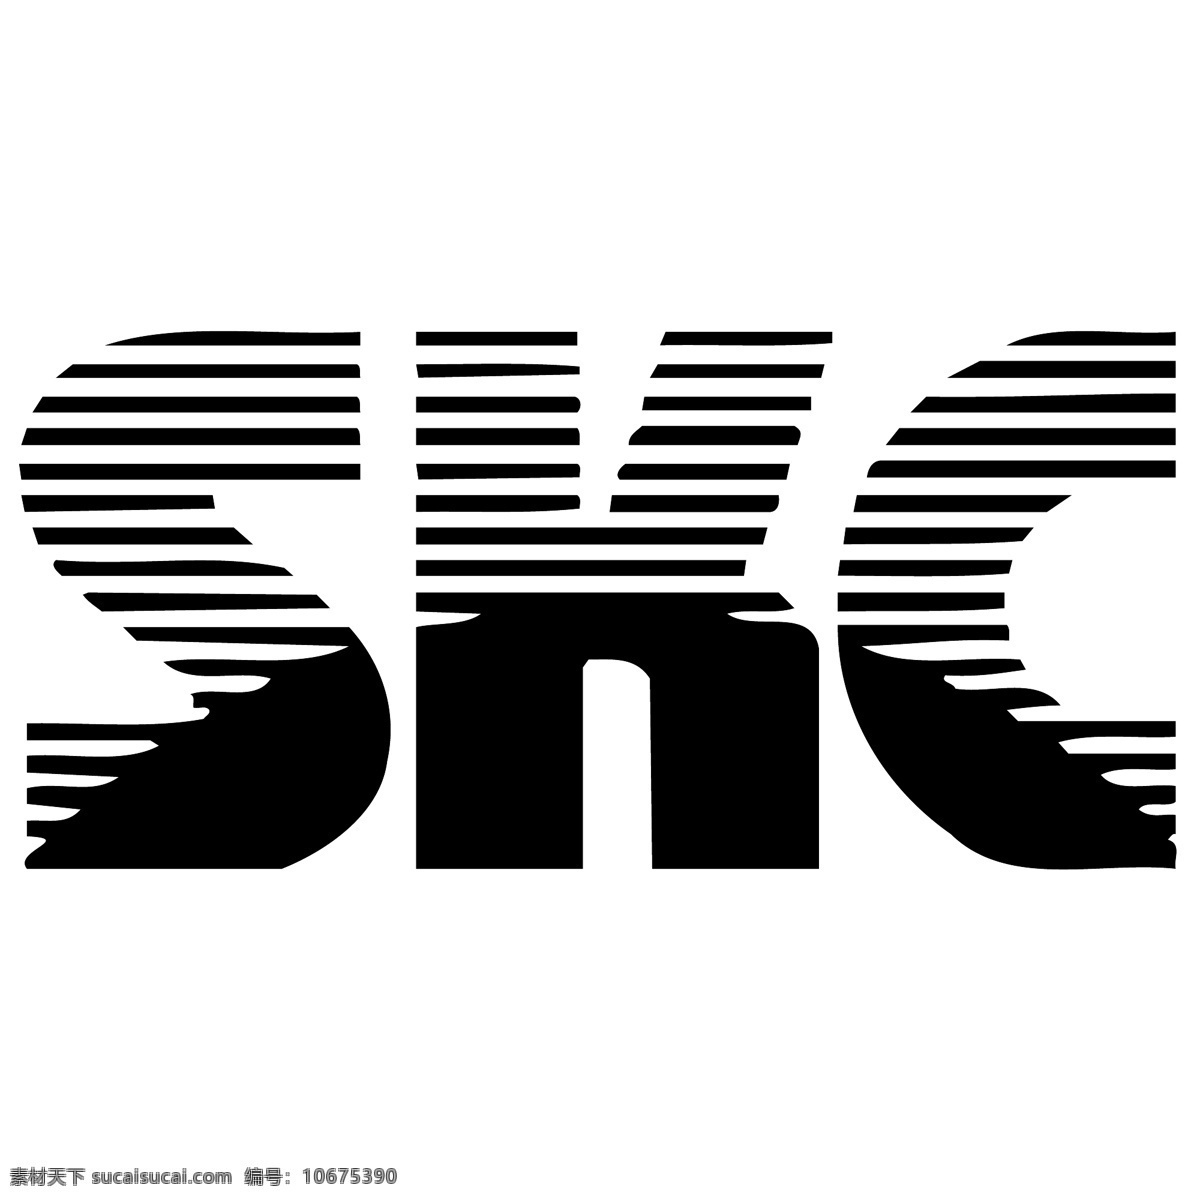 skc 矢量标志下载 免费矢量标识 商标 品牌标识 标识 矢量 免费 品牌 公司 白色